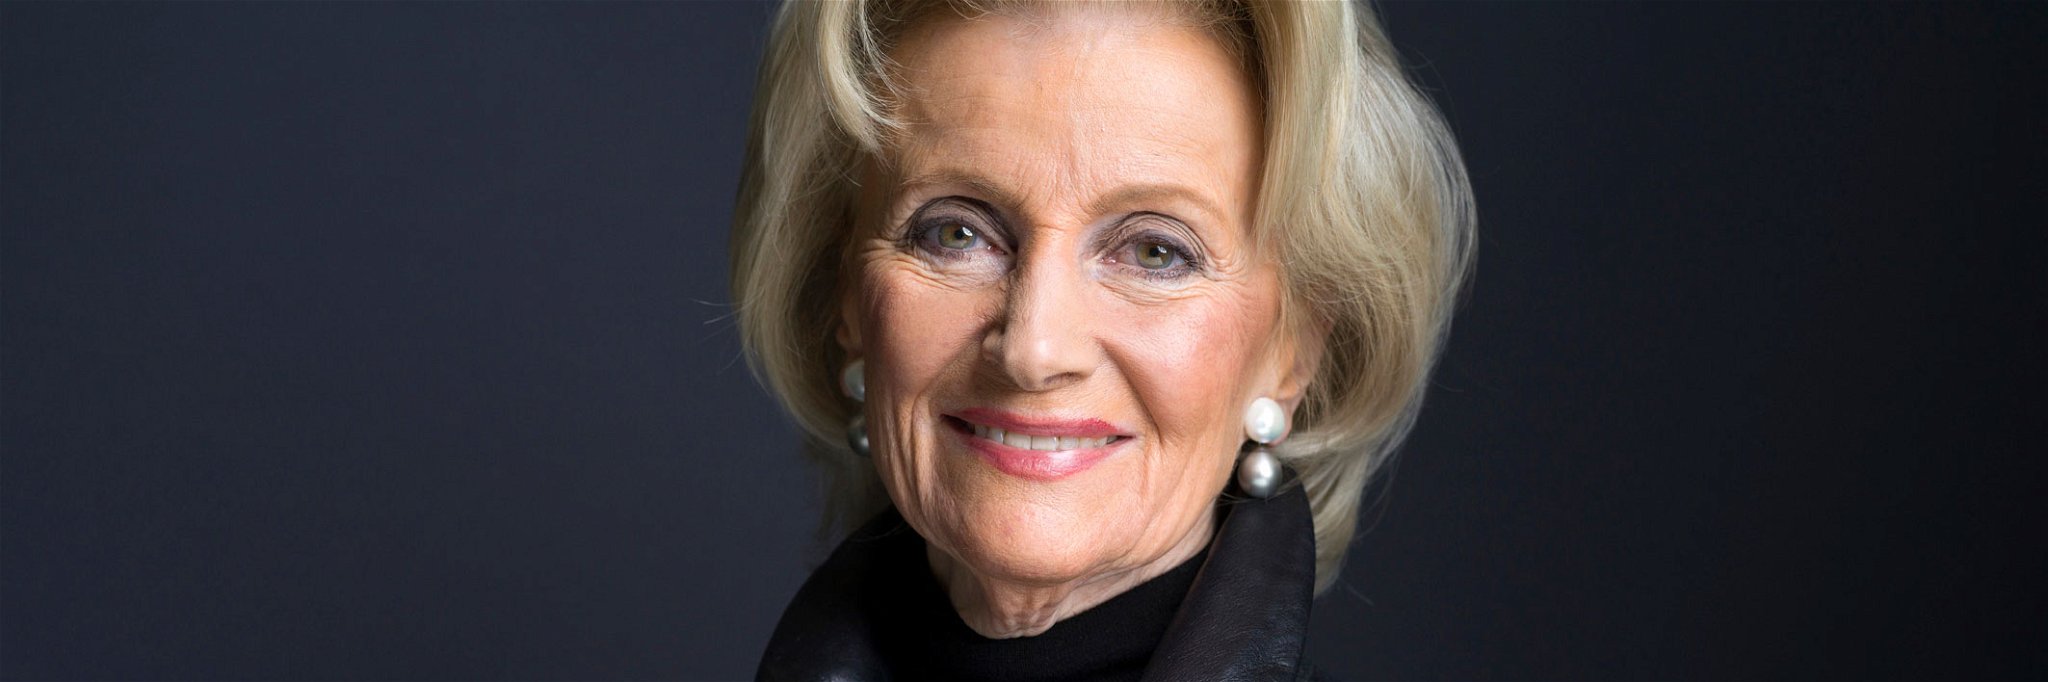 Elisabeth Gürtler, eine strahlende Kraft seit mehreren Jahrzehnten. 